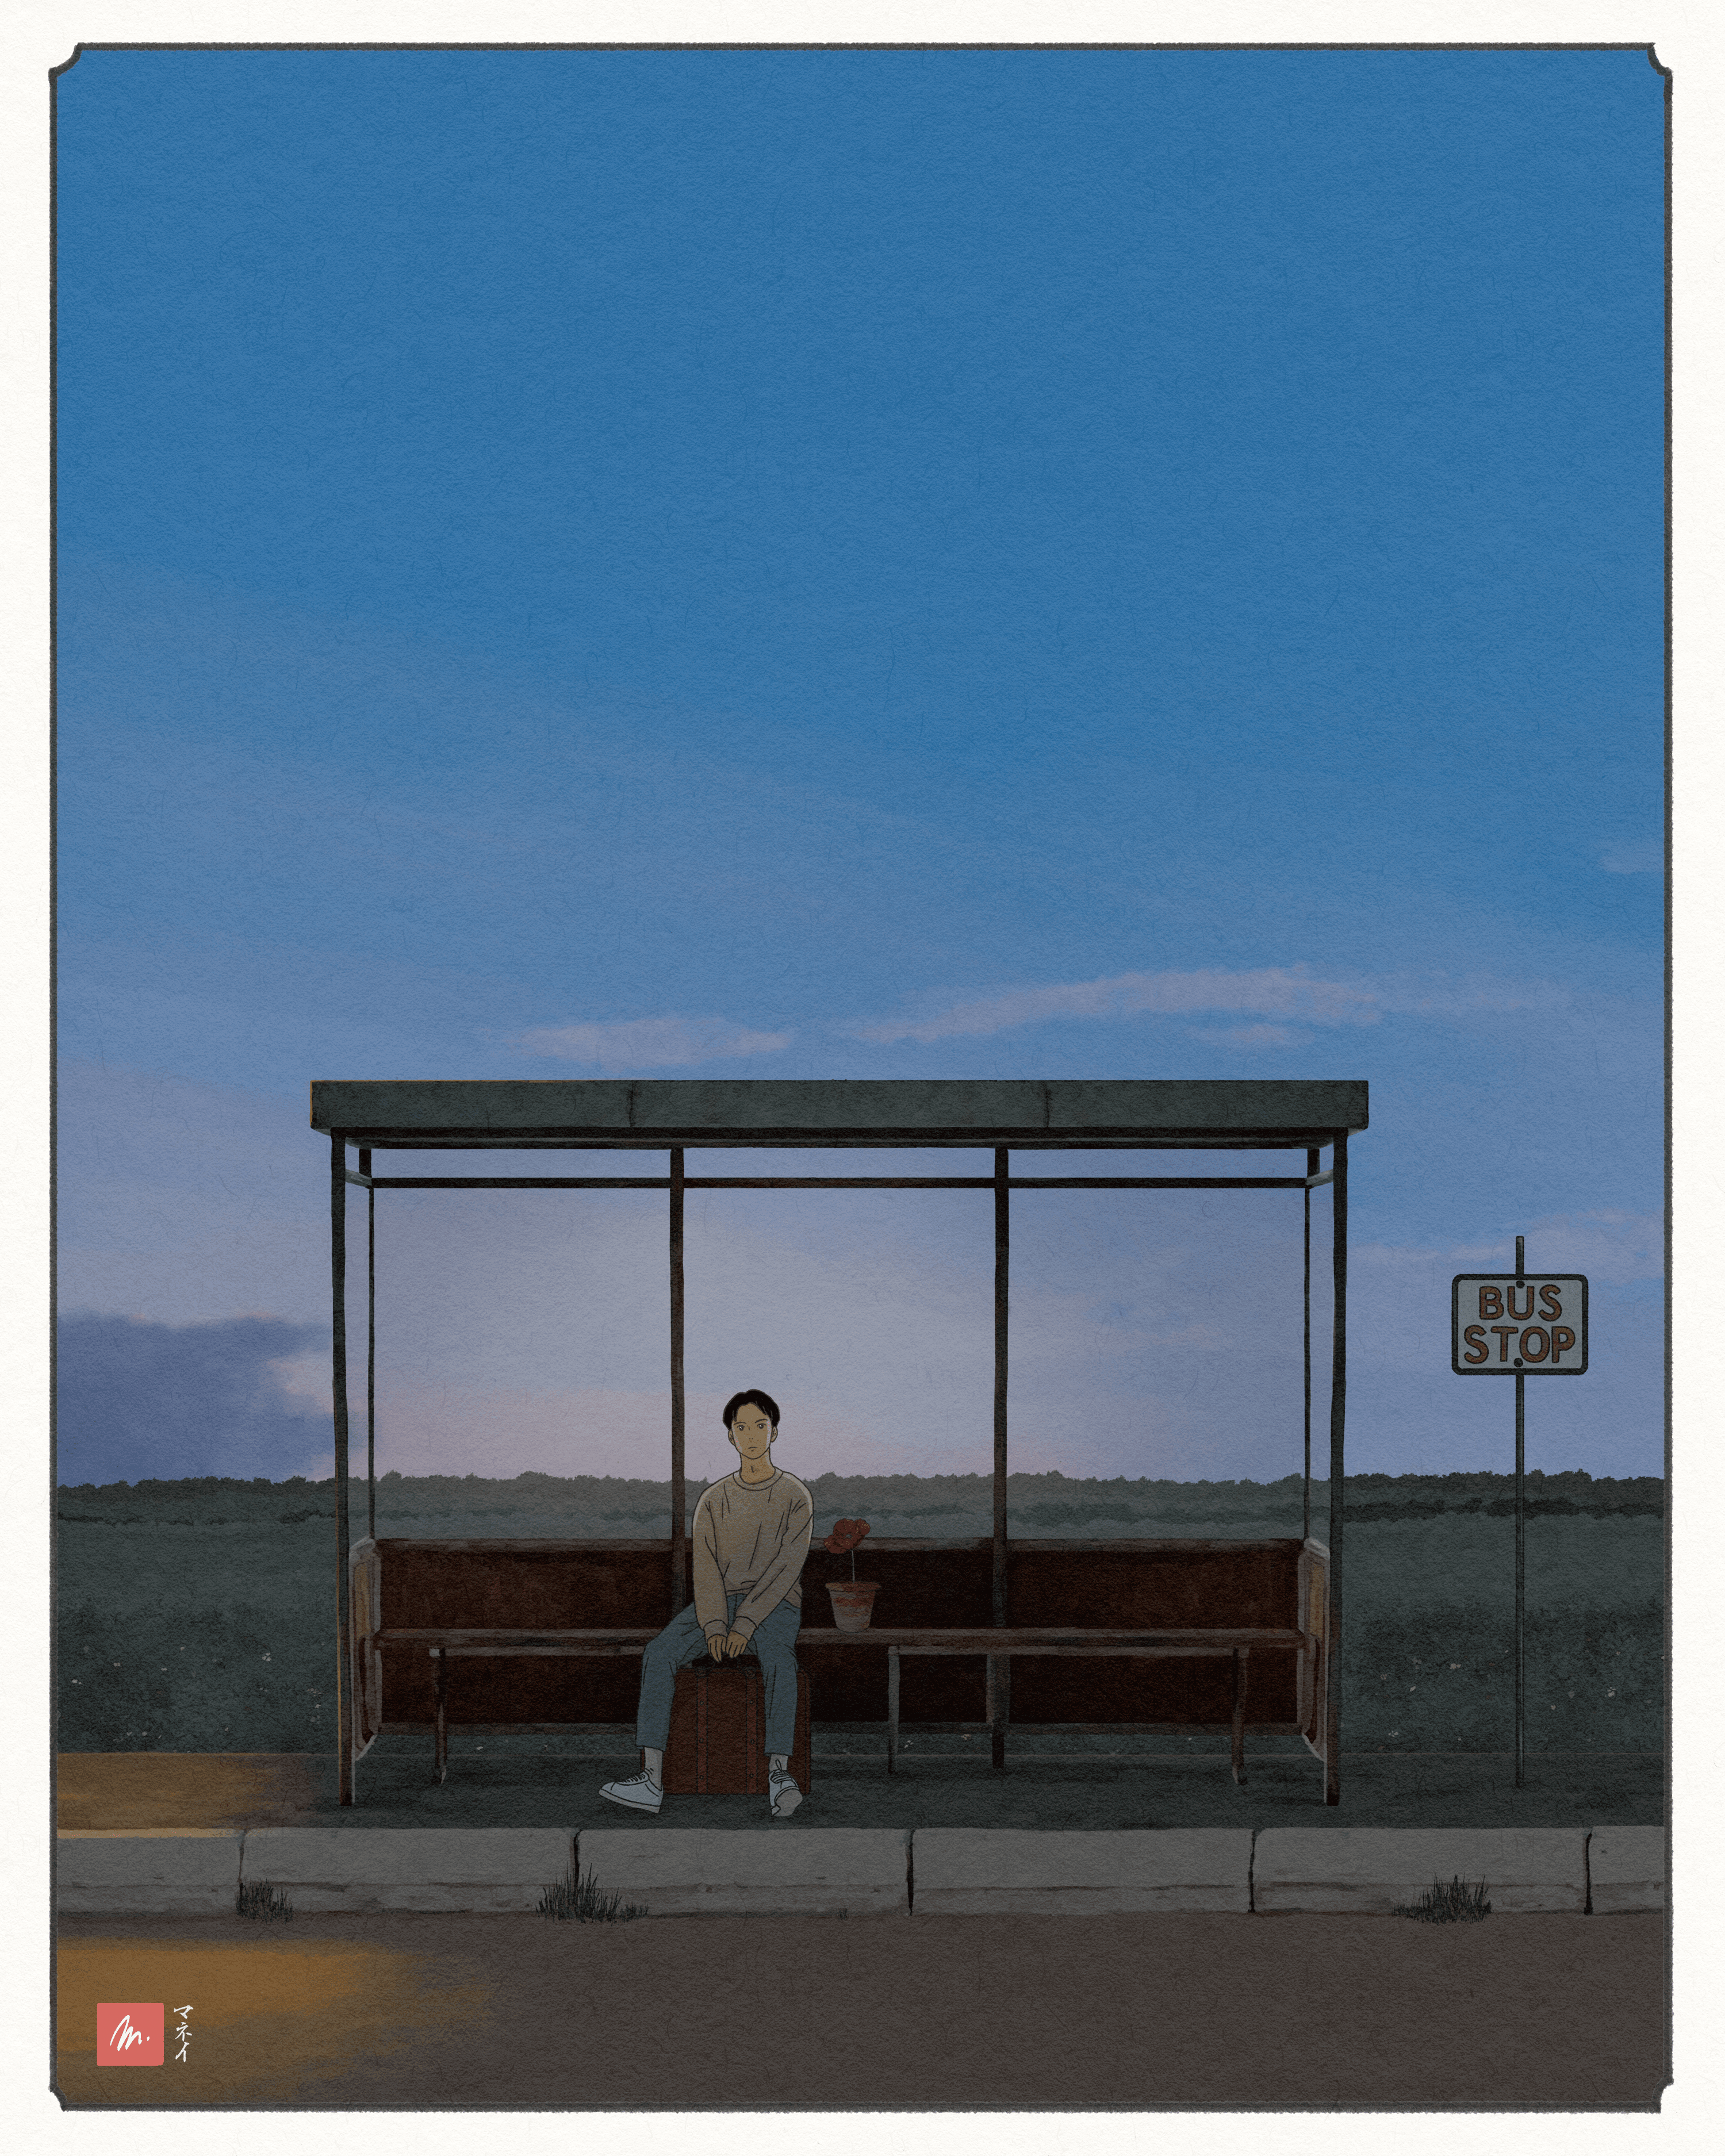 The Bus Stop - Night